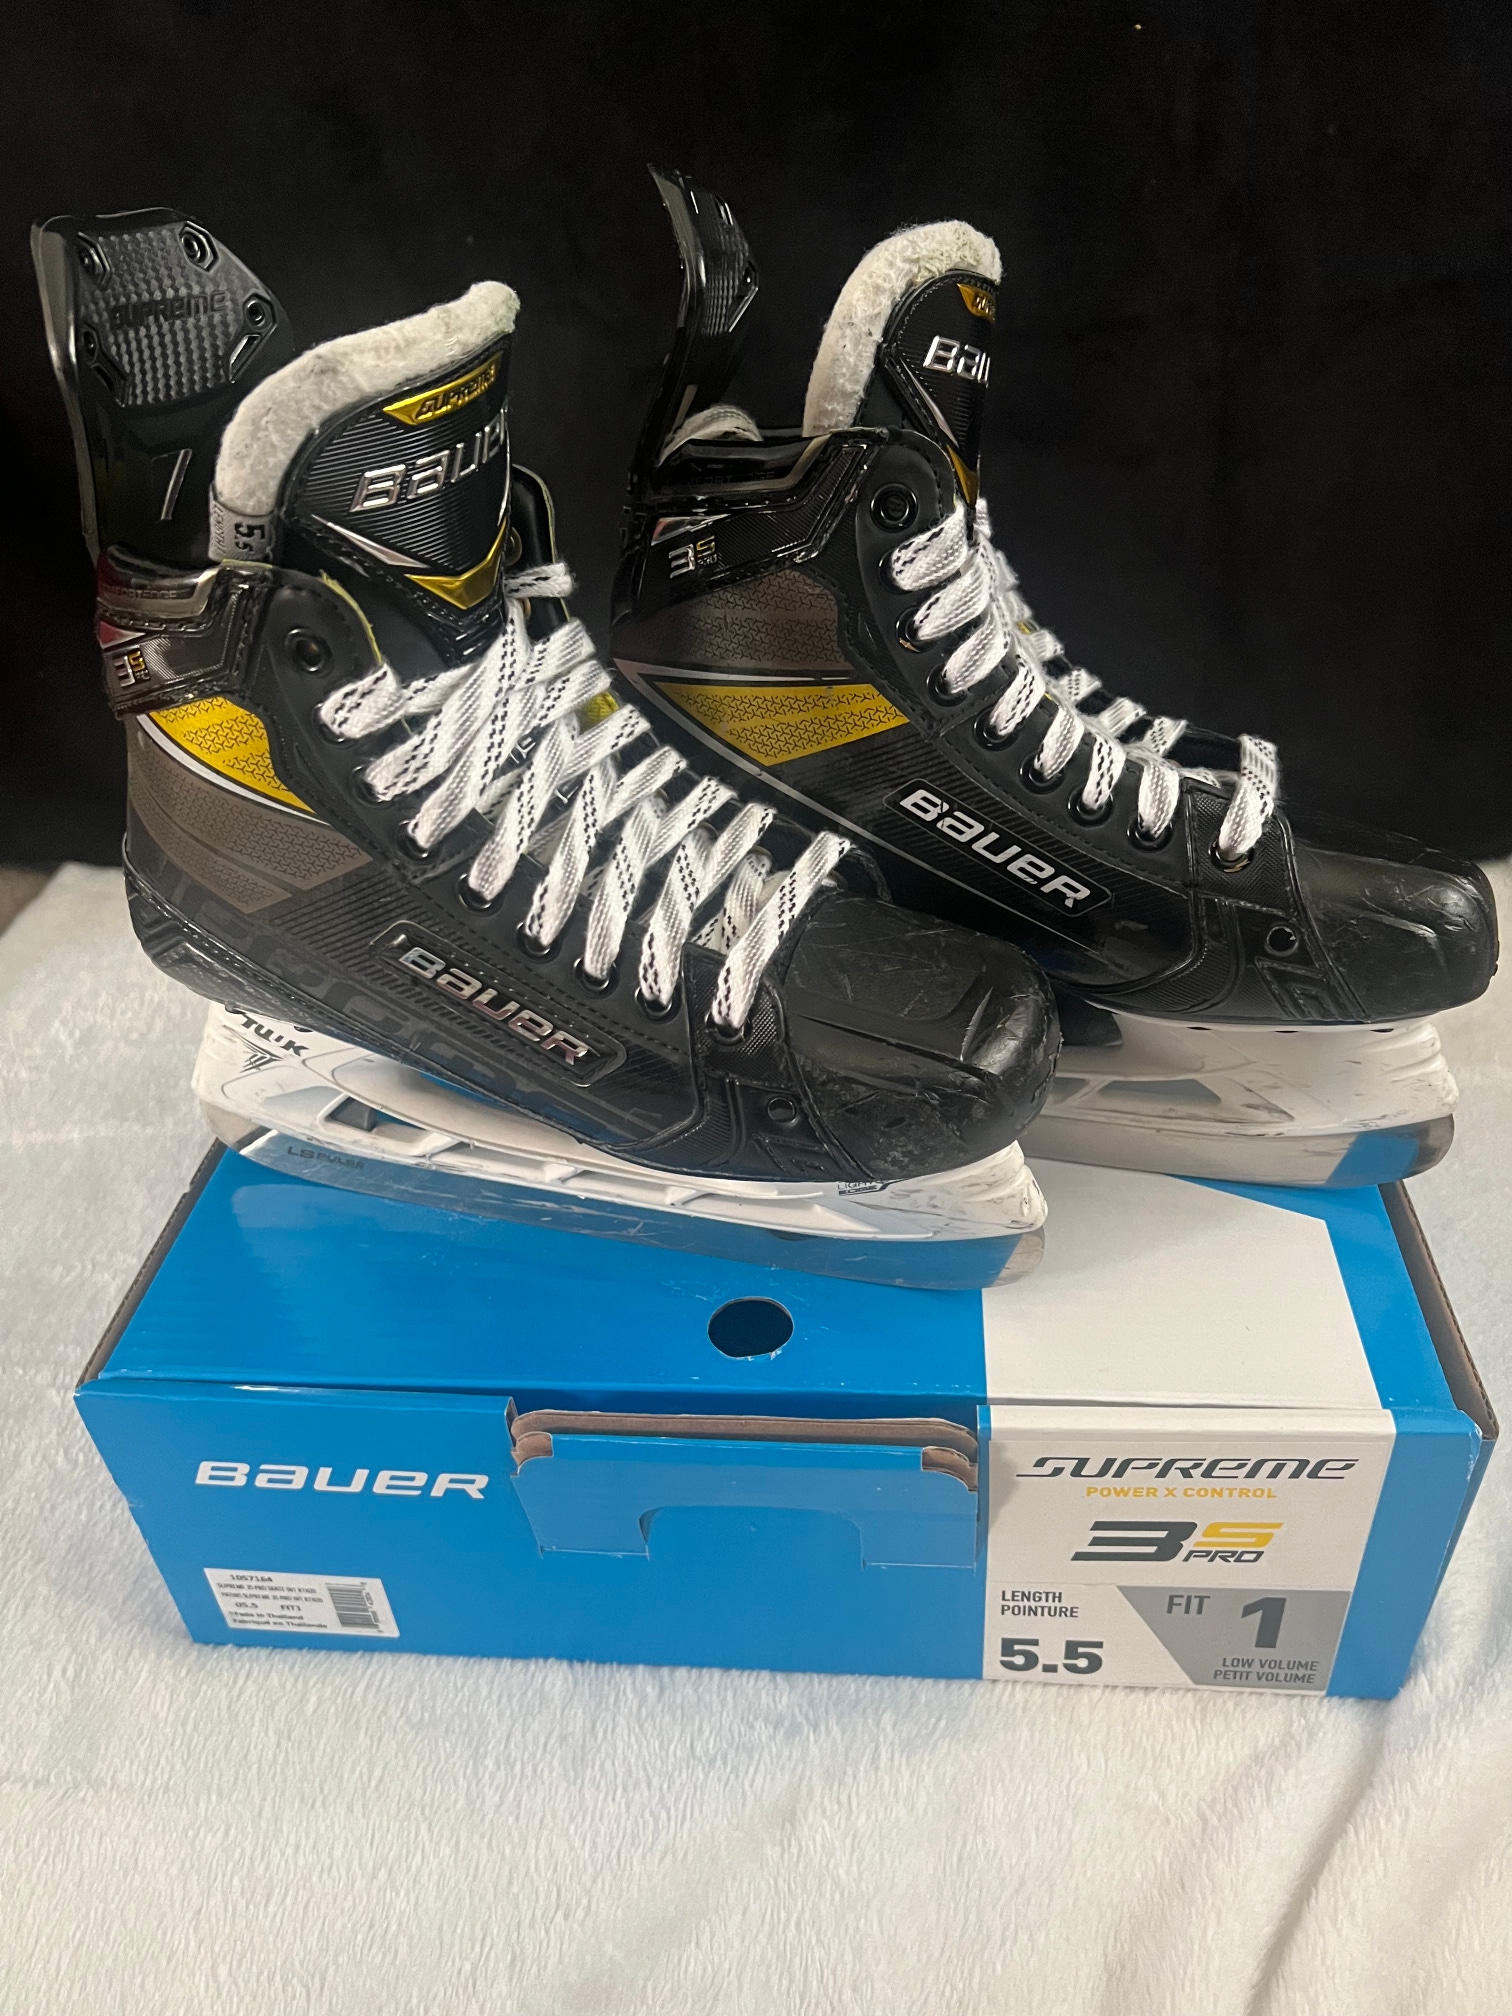 Used Bauer Supreme 3S Pro Hockey Skates Size 5.5